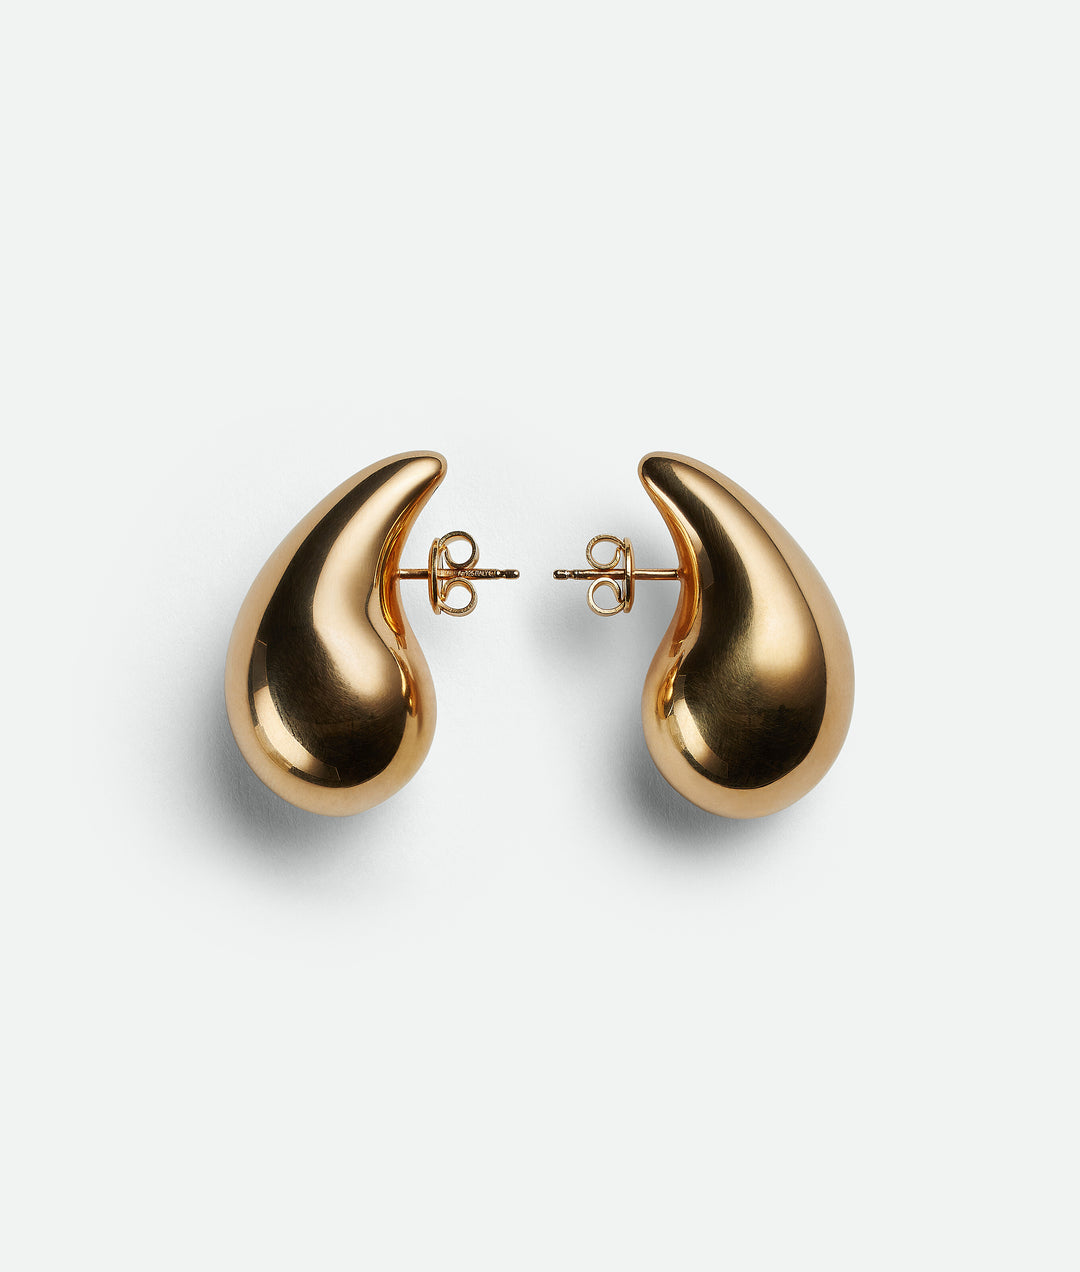 gold Tear Drop Stud earrings